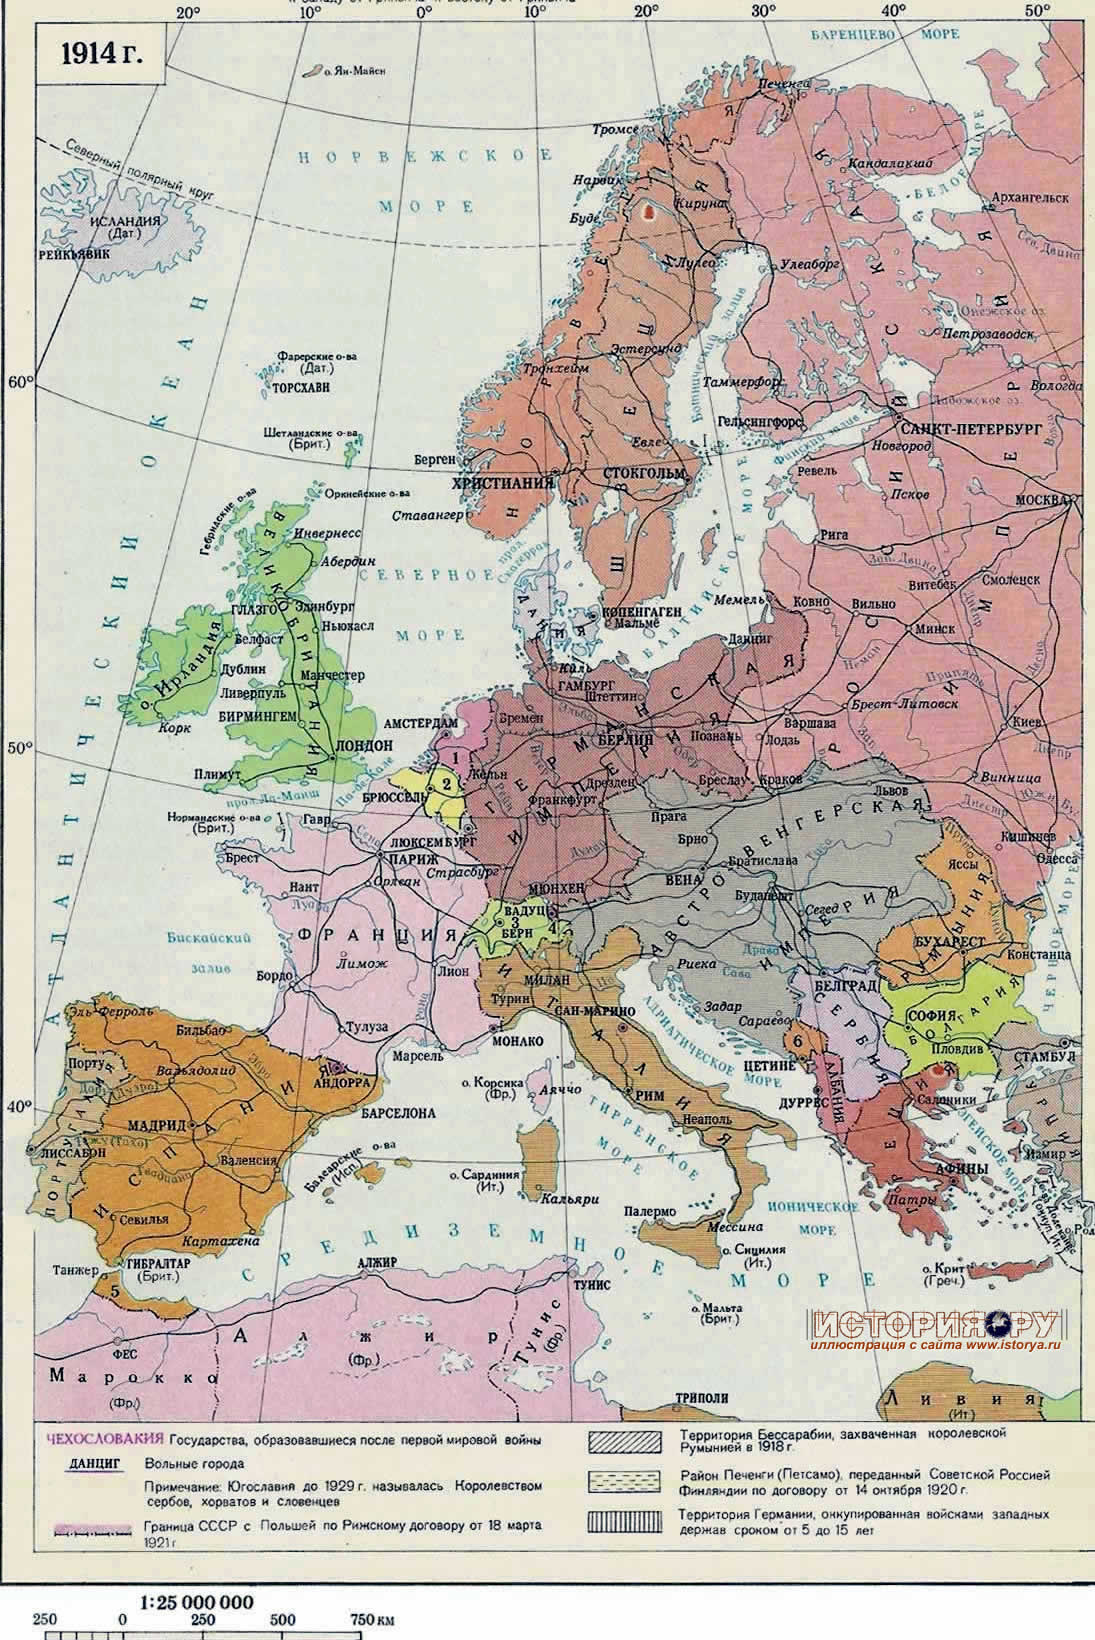 изменения в политической карте европы в итоге первой мировой войны и победы октябрьской революции